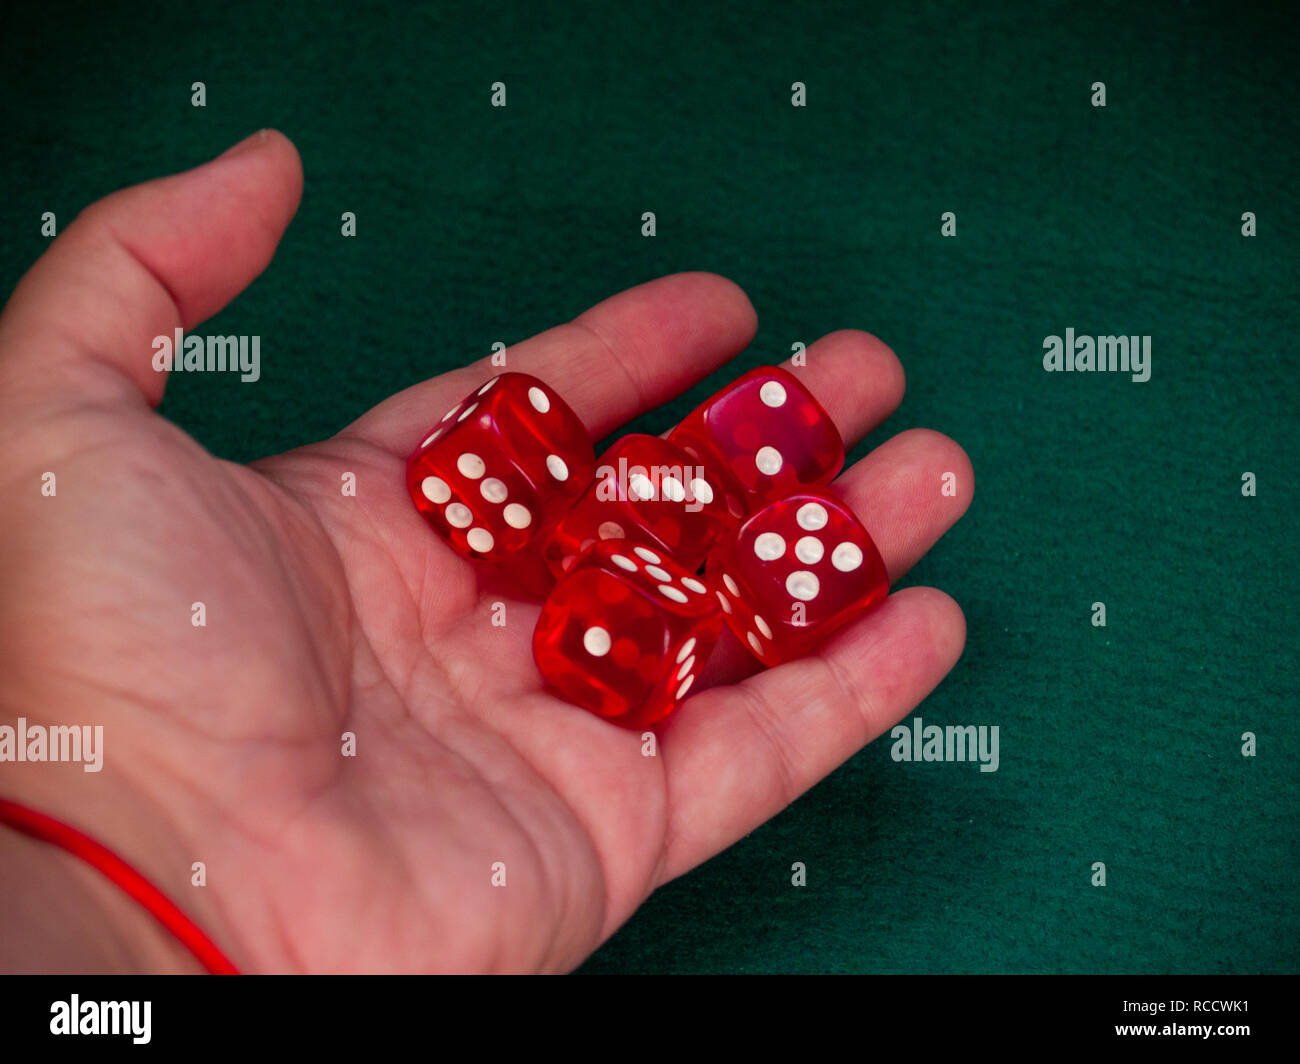 La main d'une personne de lancer les dés sur un tapis vert Photo Stock -  Alamy